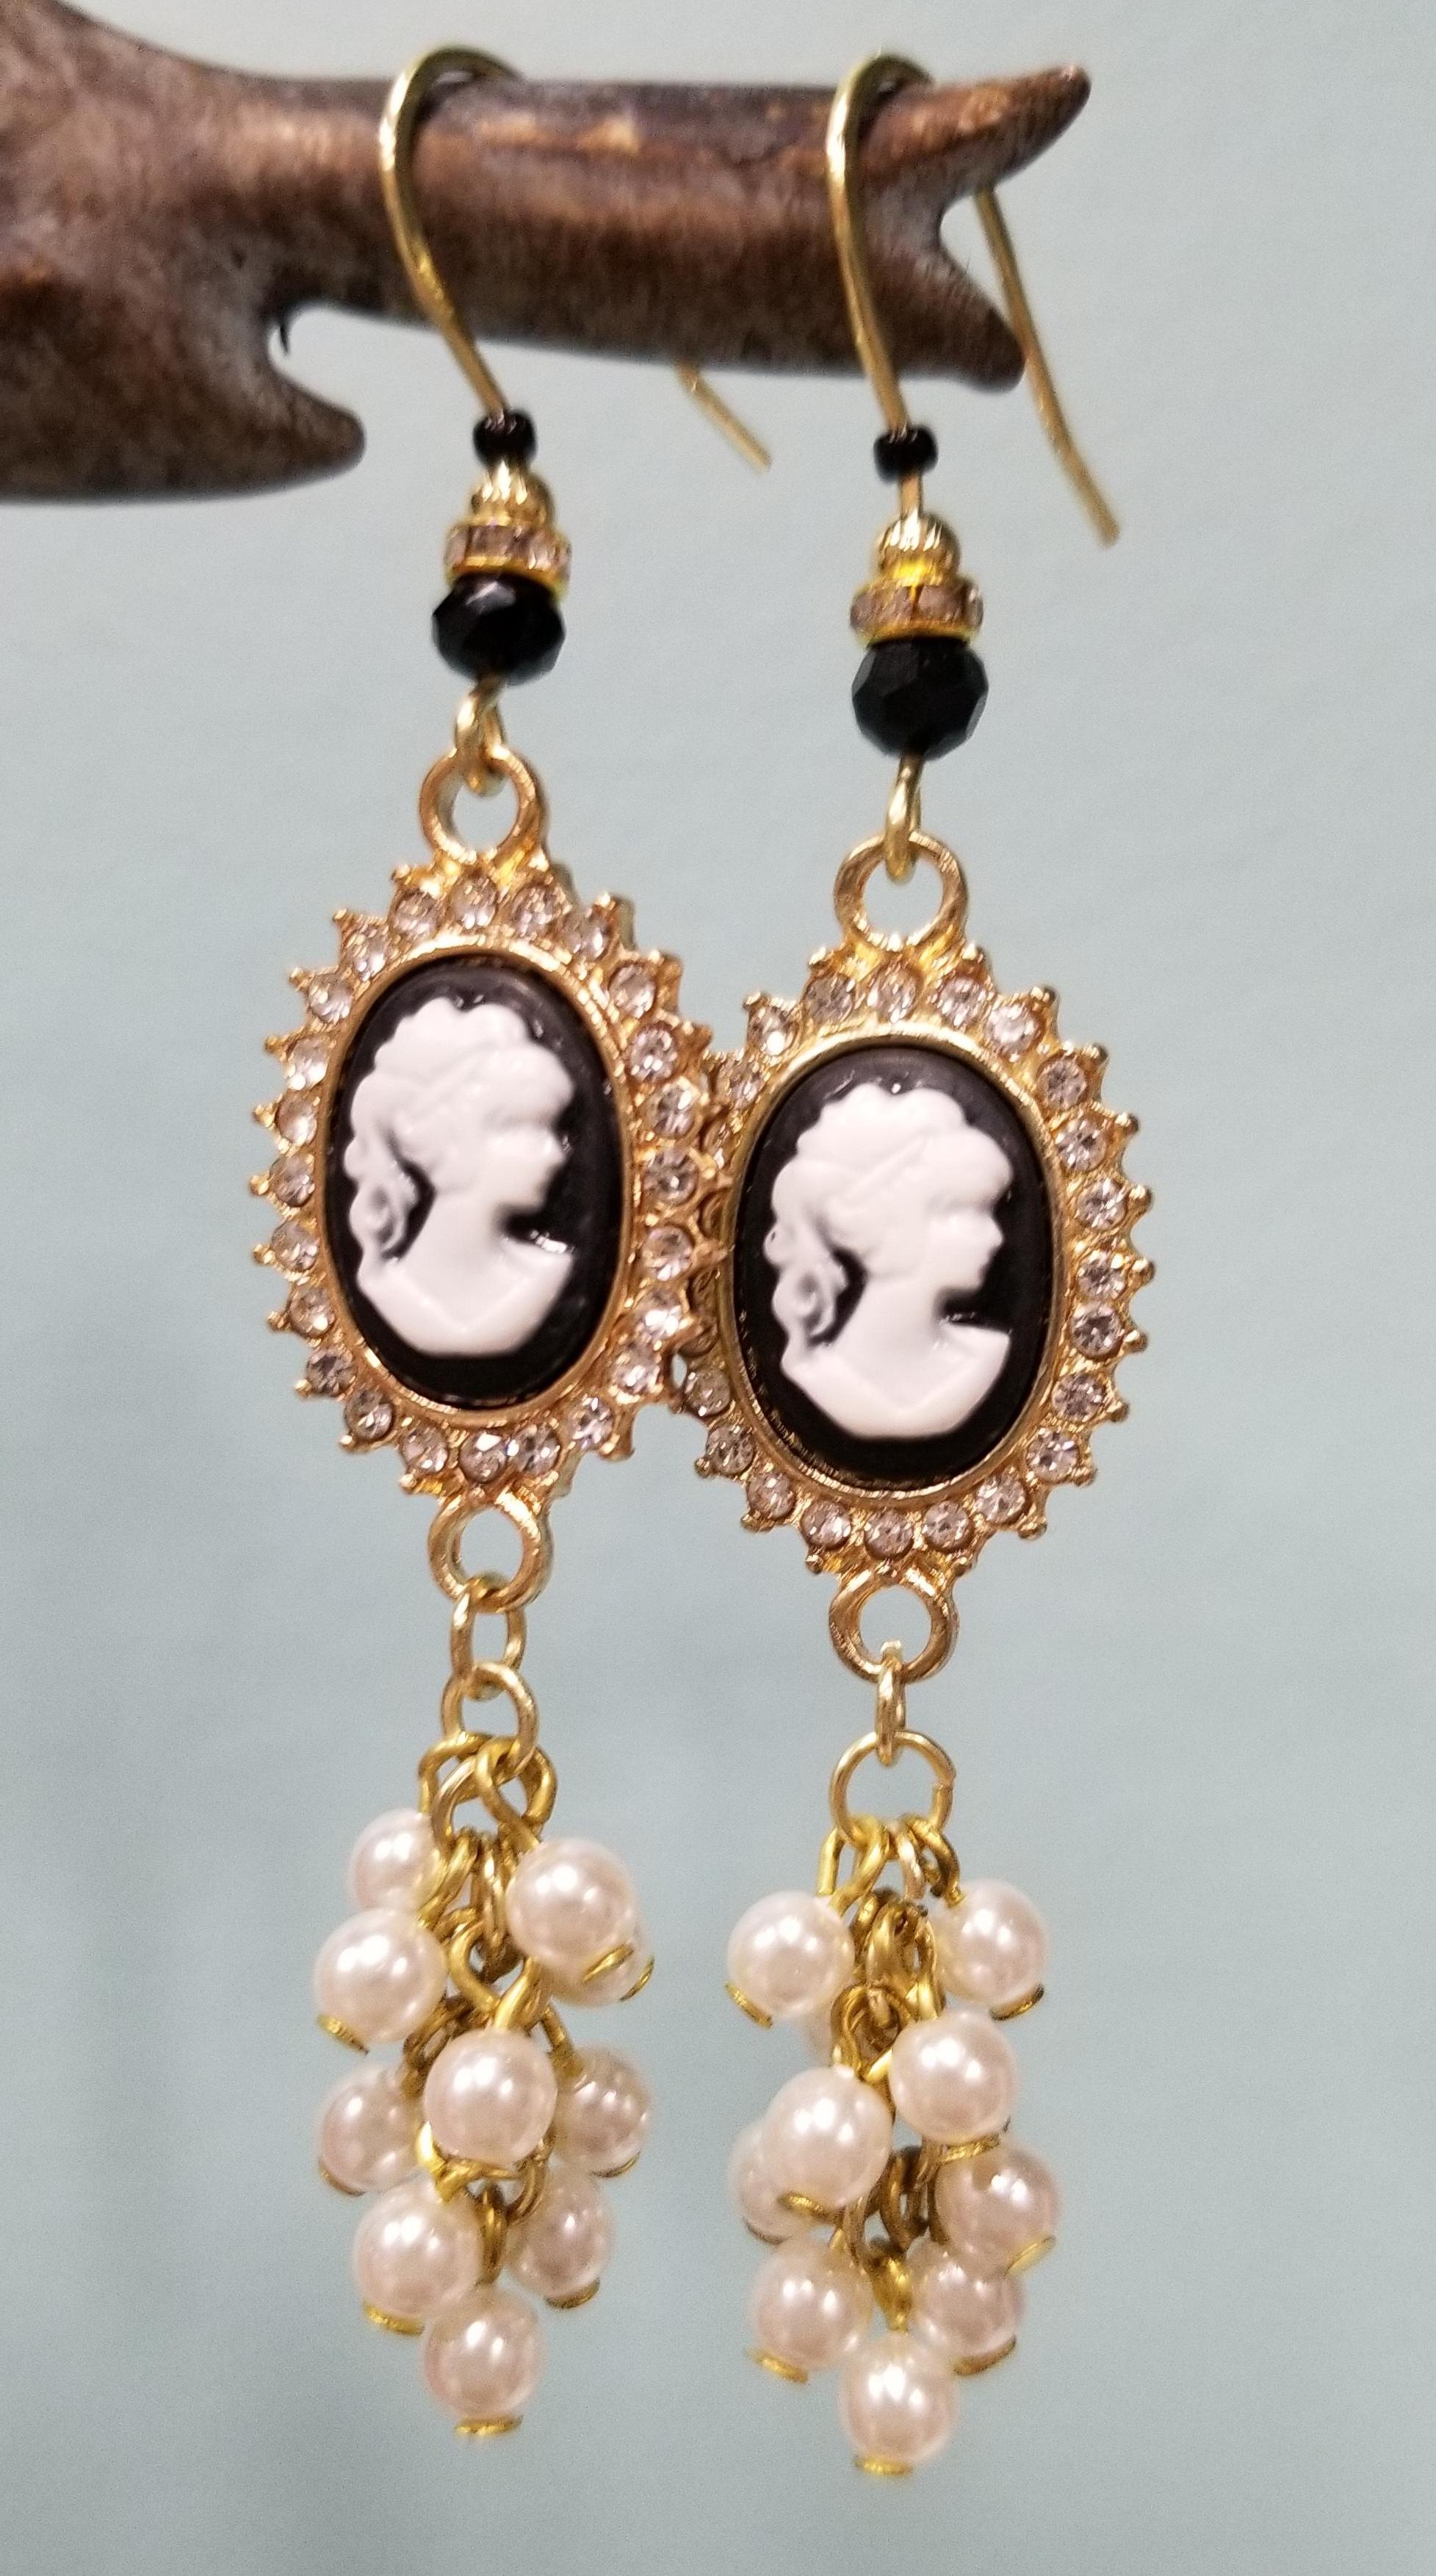 Cameo Earrings Romantic Vintage Earrings Filigree Victorian Cameo Earrings  Renaissance Dangling Earrings Cottage Chic Earrings - Etsy | Etsy earrings, Cameo  earrings, Chic earrings